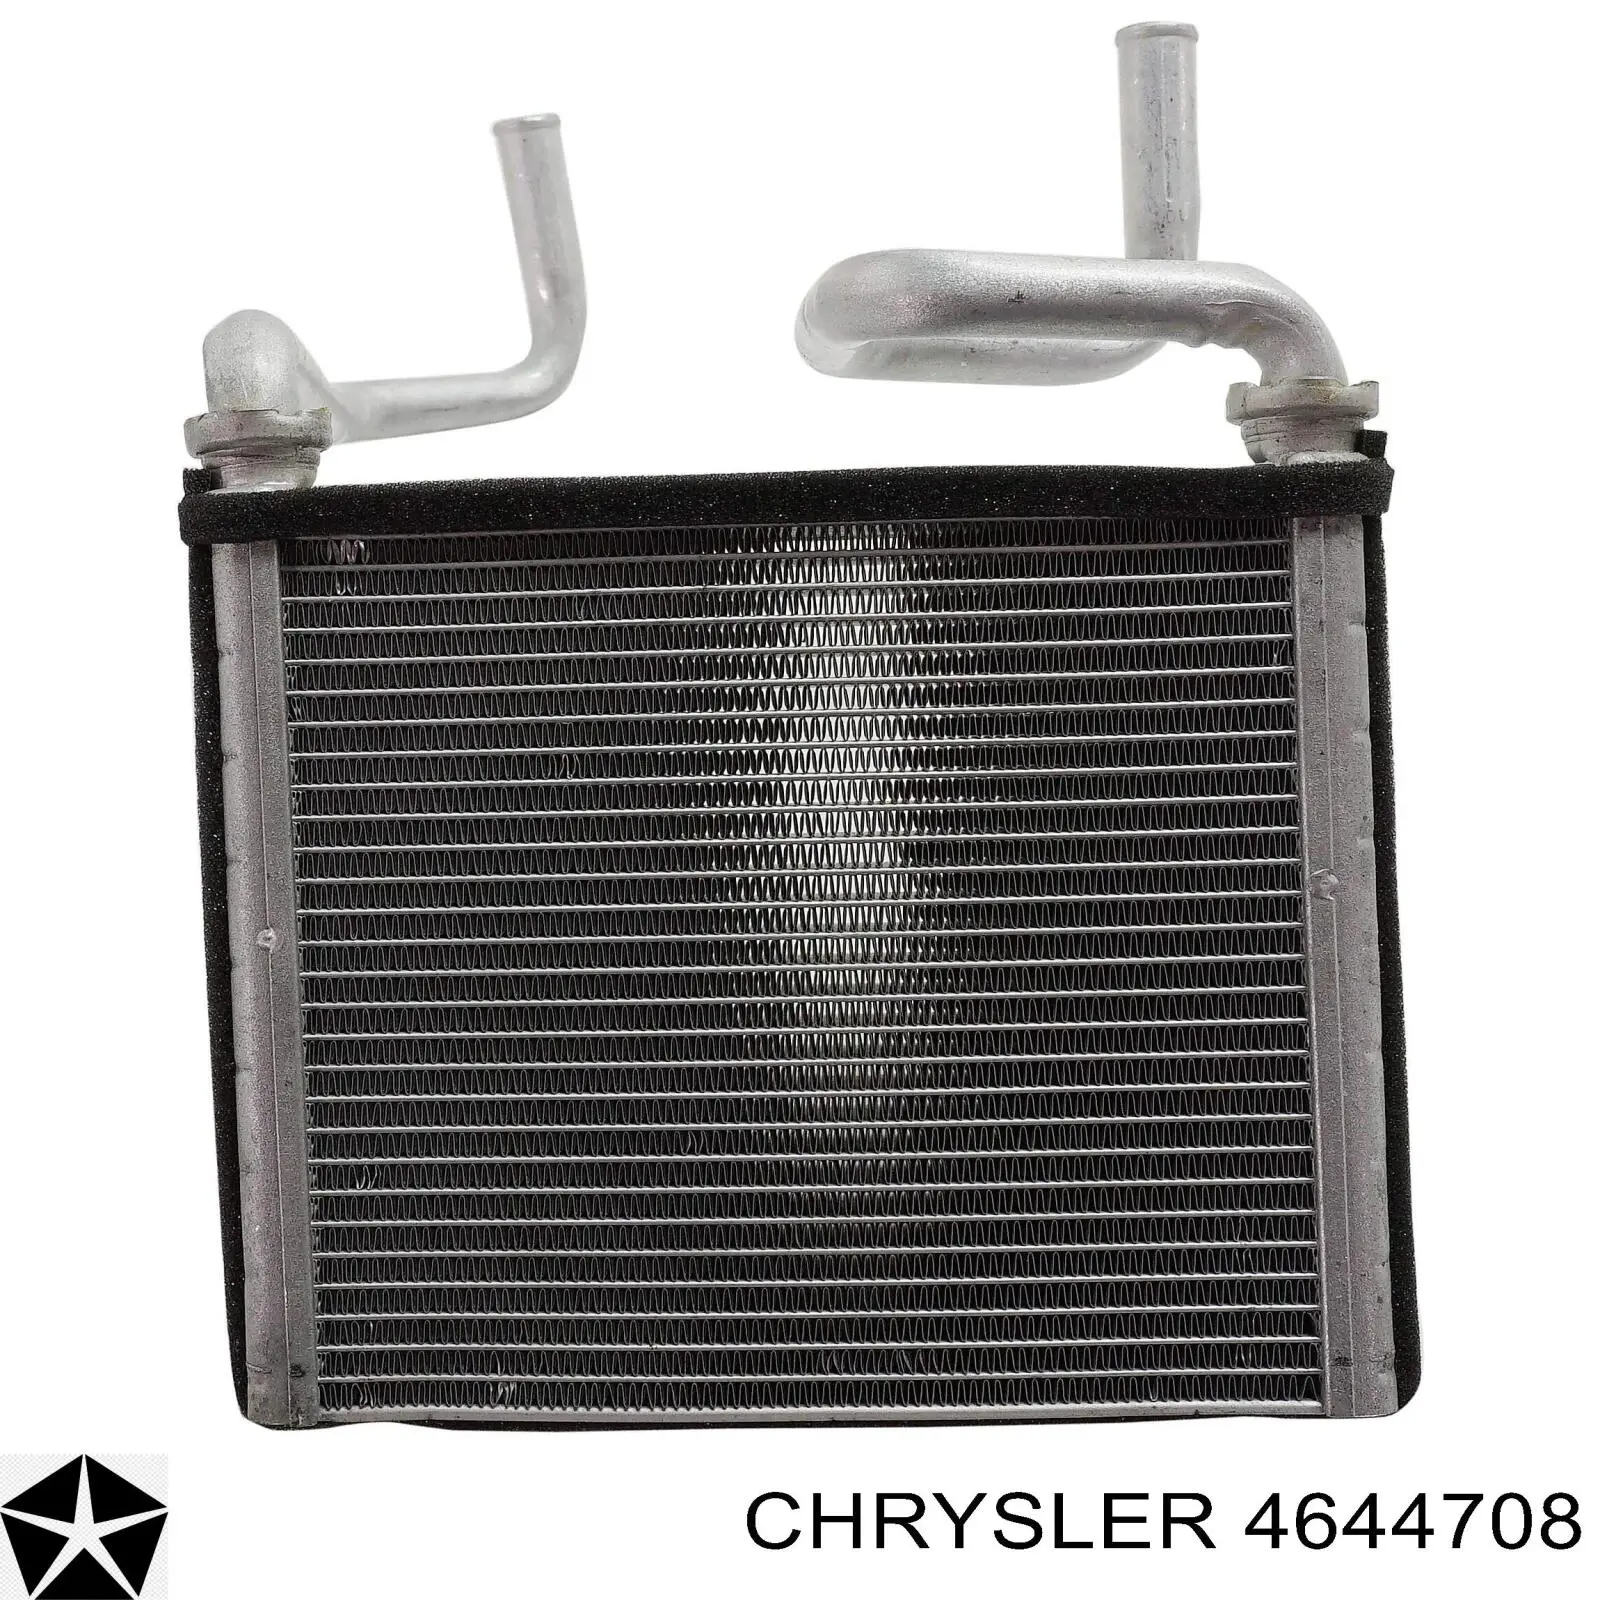 4644708 Chrysler радиатор печки